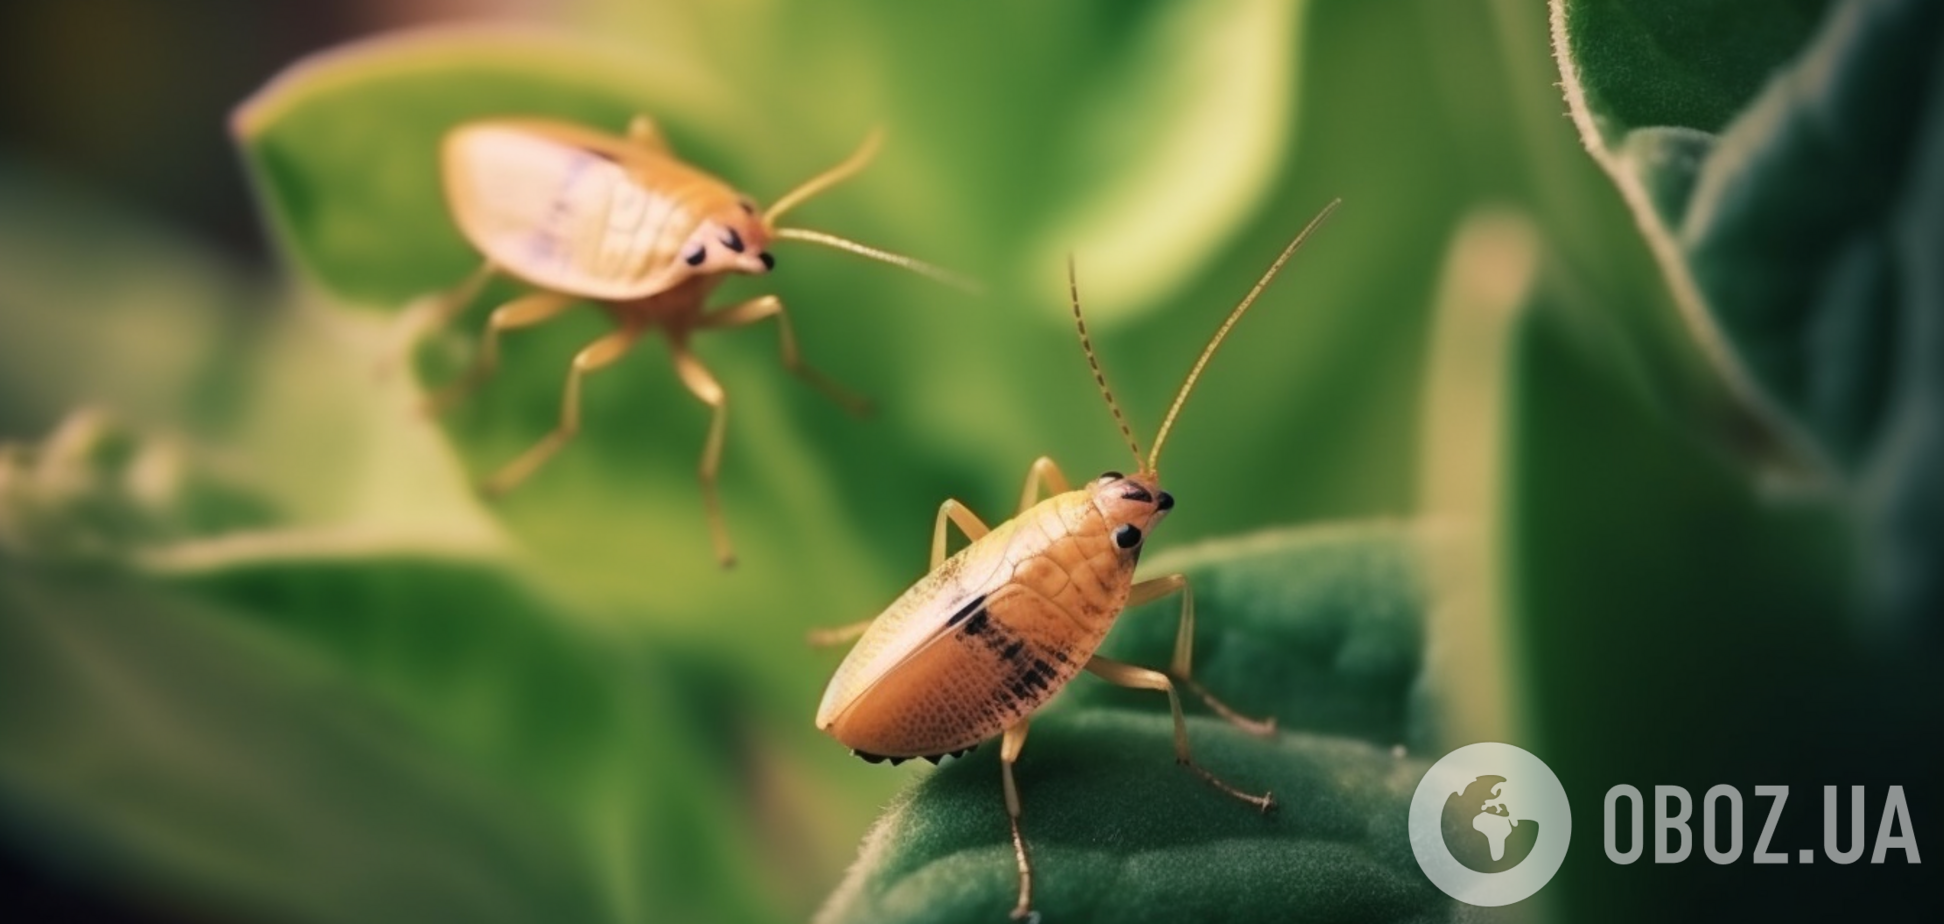 Як позбутися жуків на будь-яких рослинах: вірусний лайфхак